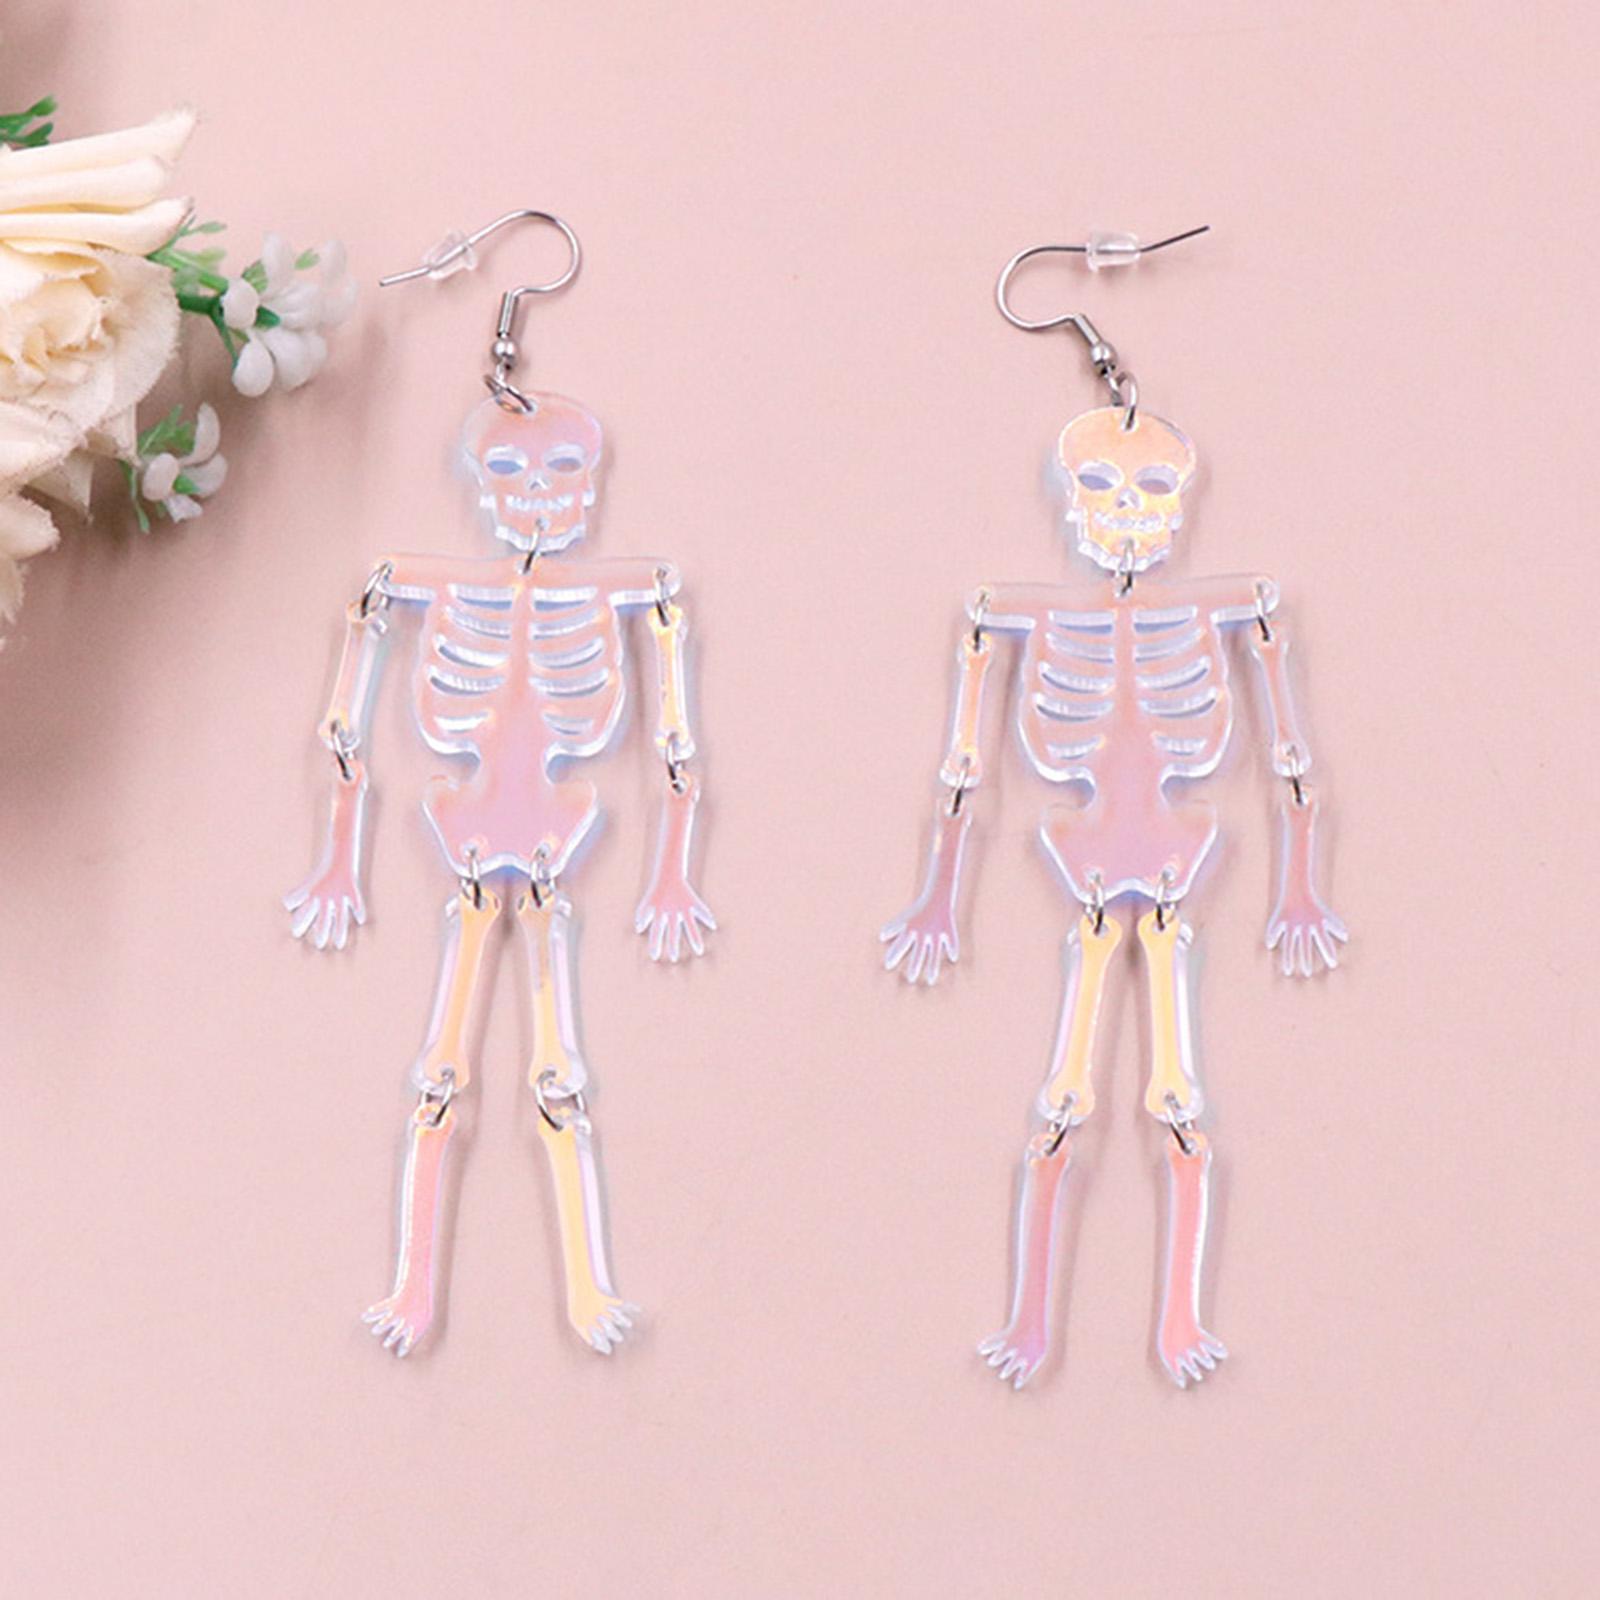 Halloween Skeleton Earrings Spooky Earrings Decor Costume Accessories Dress up Trendy Fashion Punk Dangle Earrings for Daily Wear Club